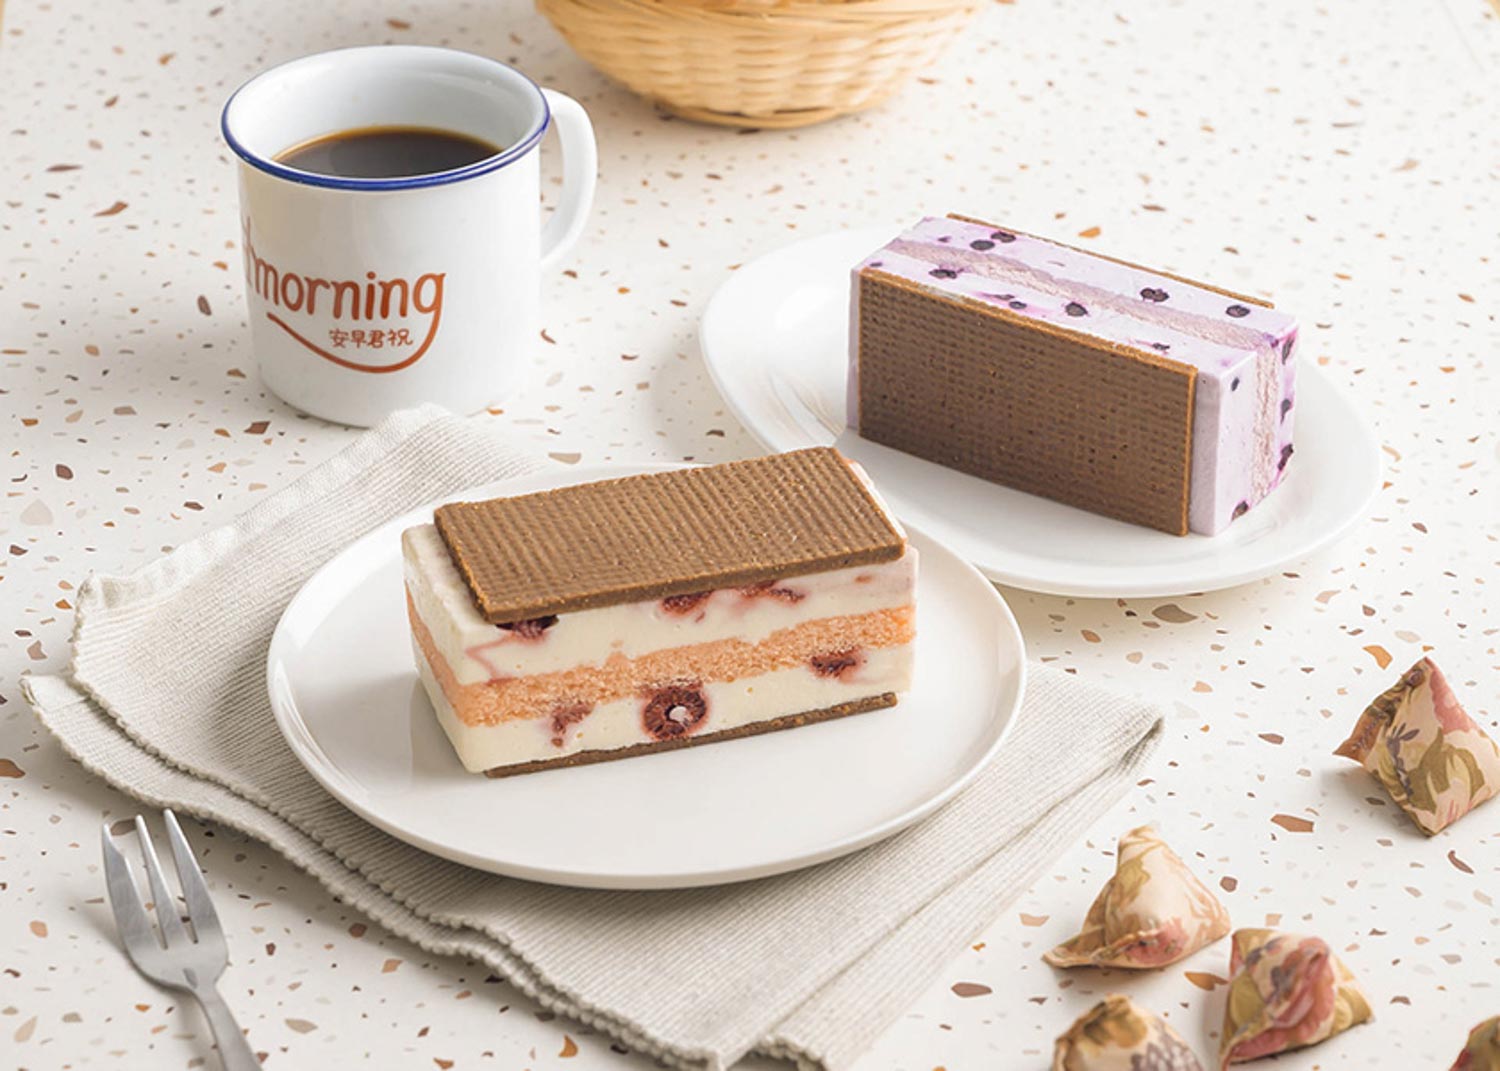 Starbucks Ice Cream Sandwich - Raspberry Cheesecake